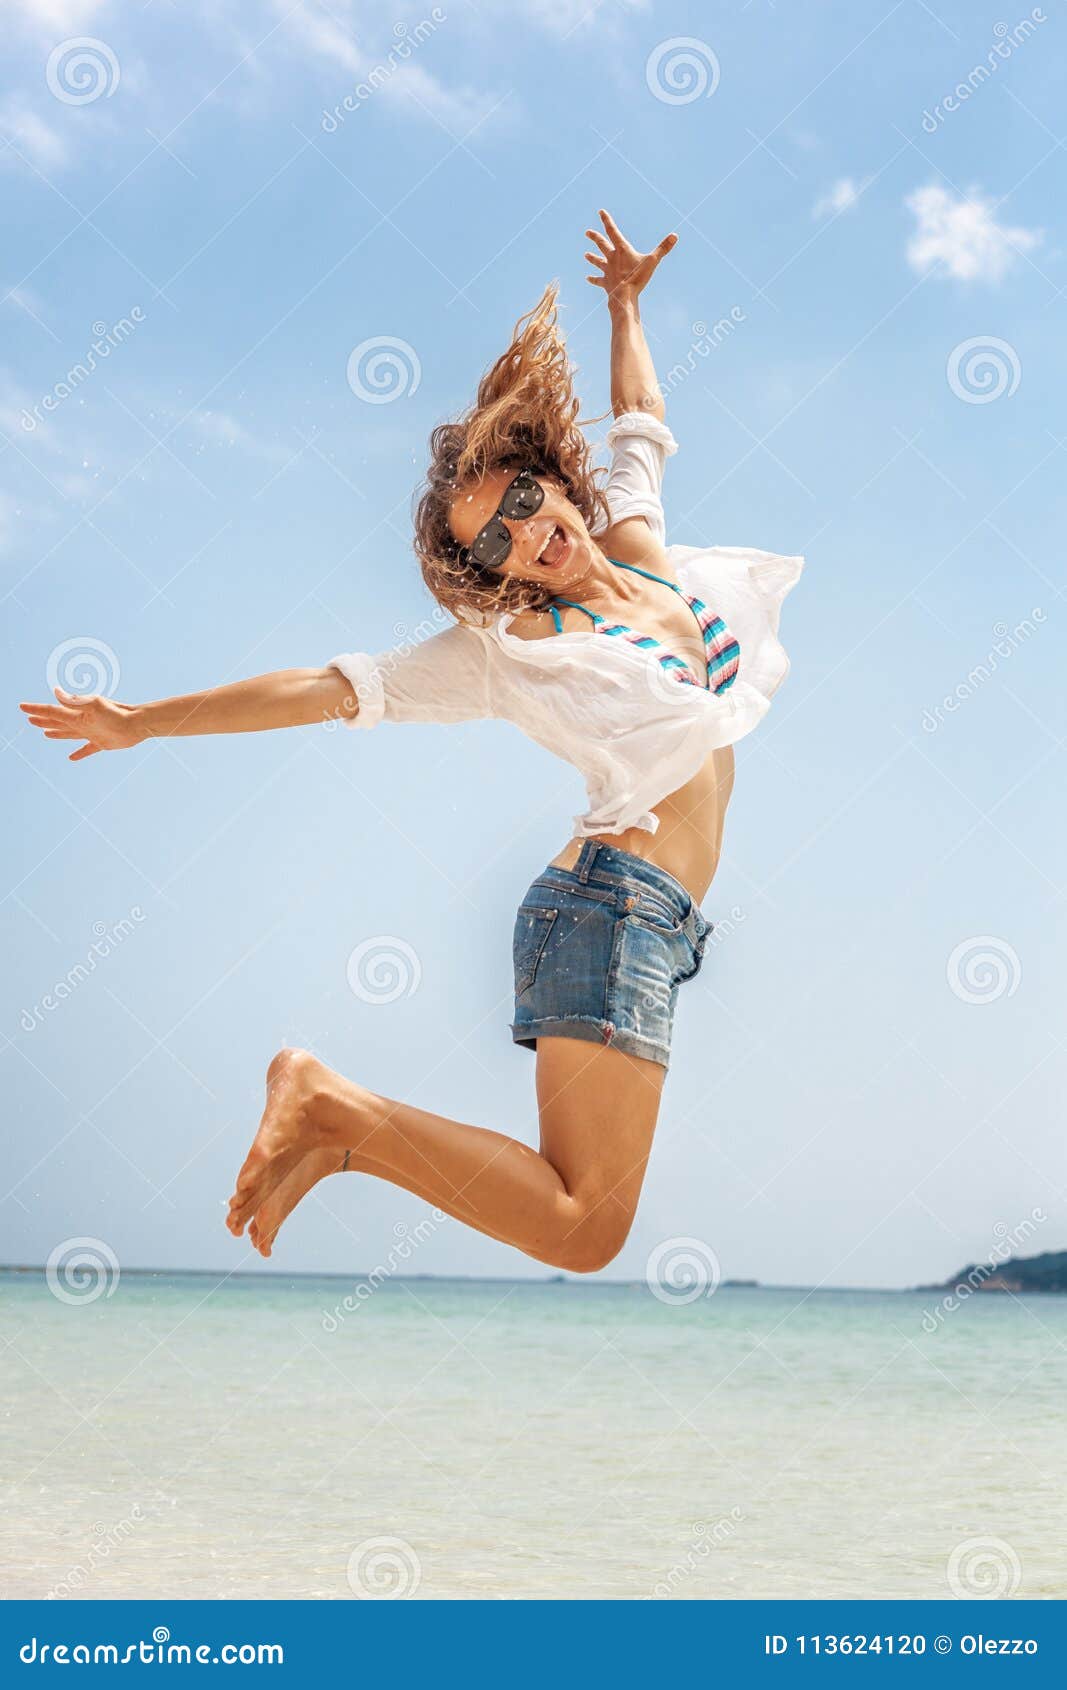 Шорты прыгать. Девушка в шортах прыгает. Девочка прыгает в шортах. Девушка в шортах скачет. Девушка в коротких оранжевых шортах прыгает на шаре.